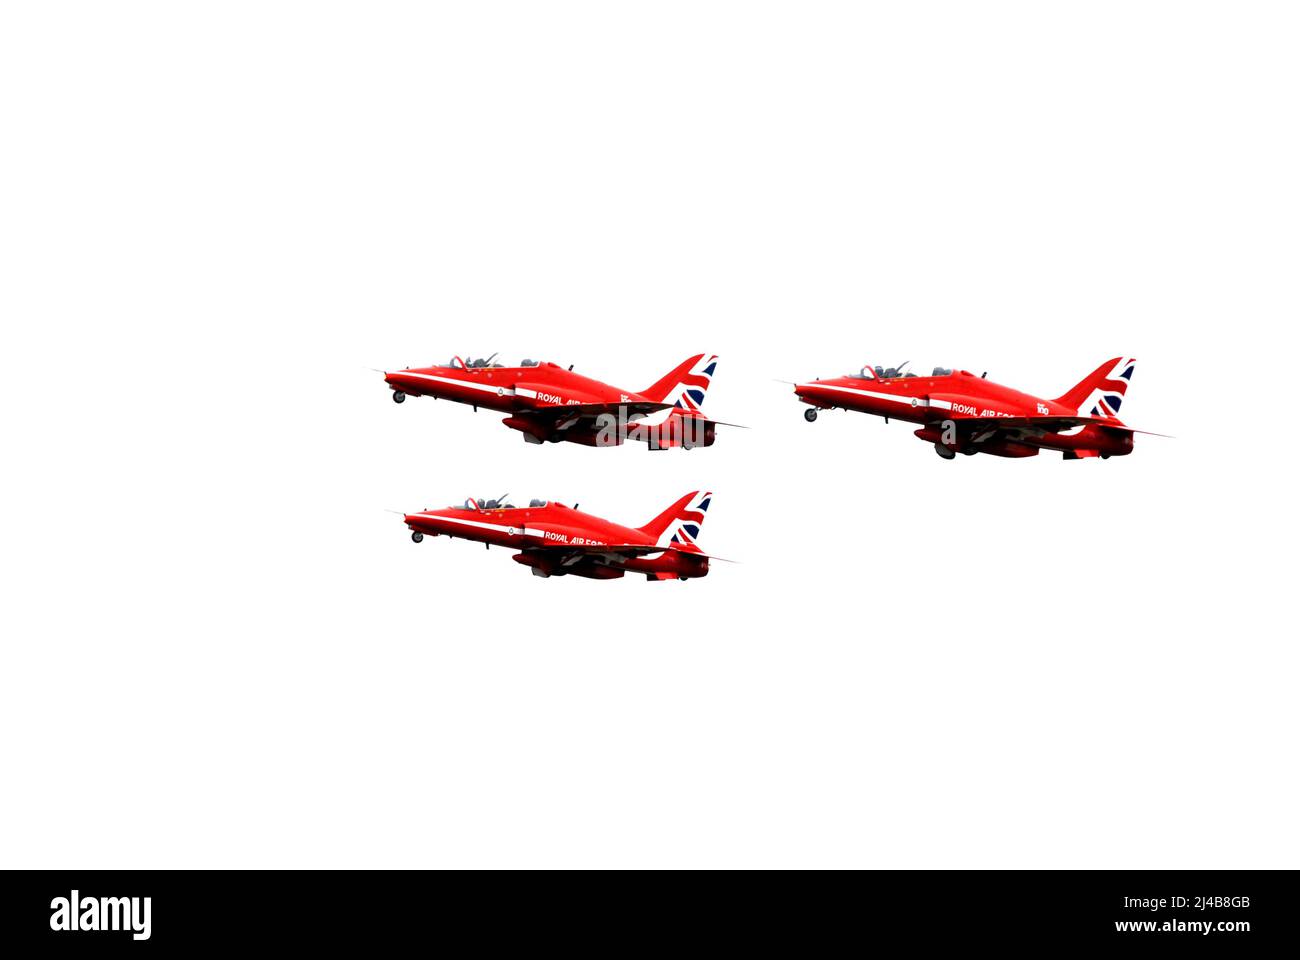 Tre aerei Red Arrows Hawk subito dopo il decollo con carro ancora in ritiro, al Biggin Hill Airshow Foto Stock